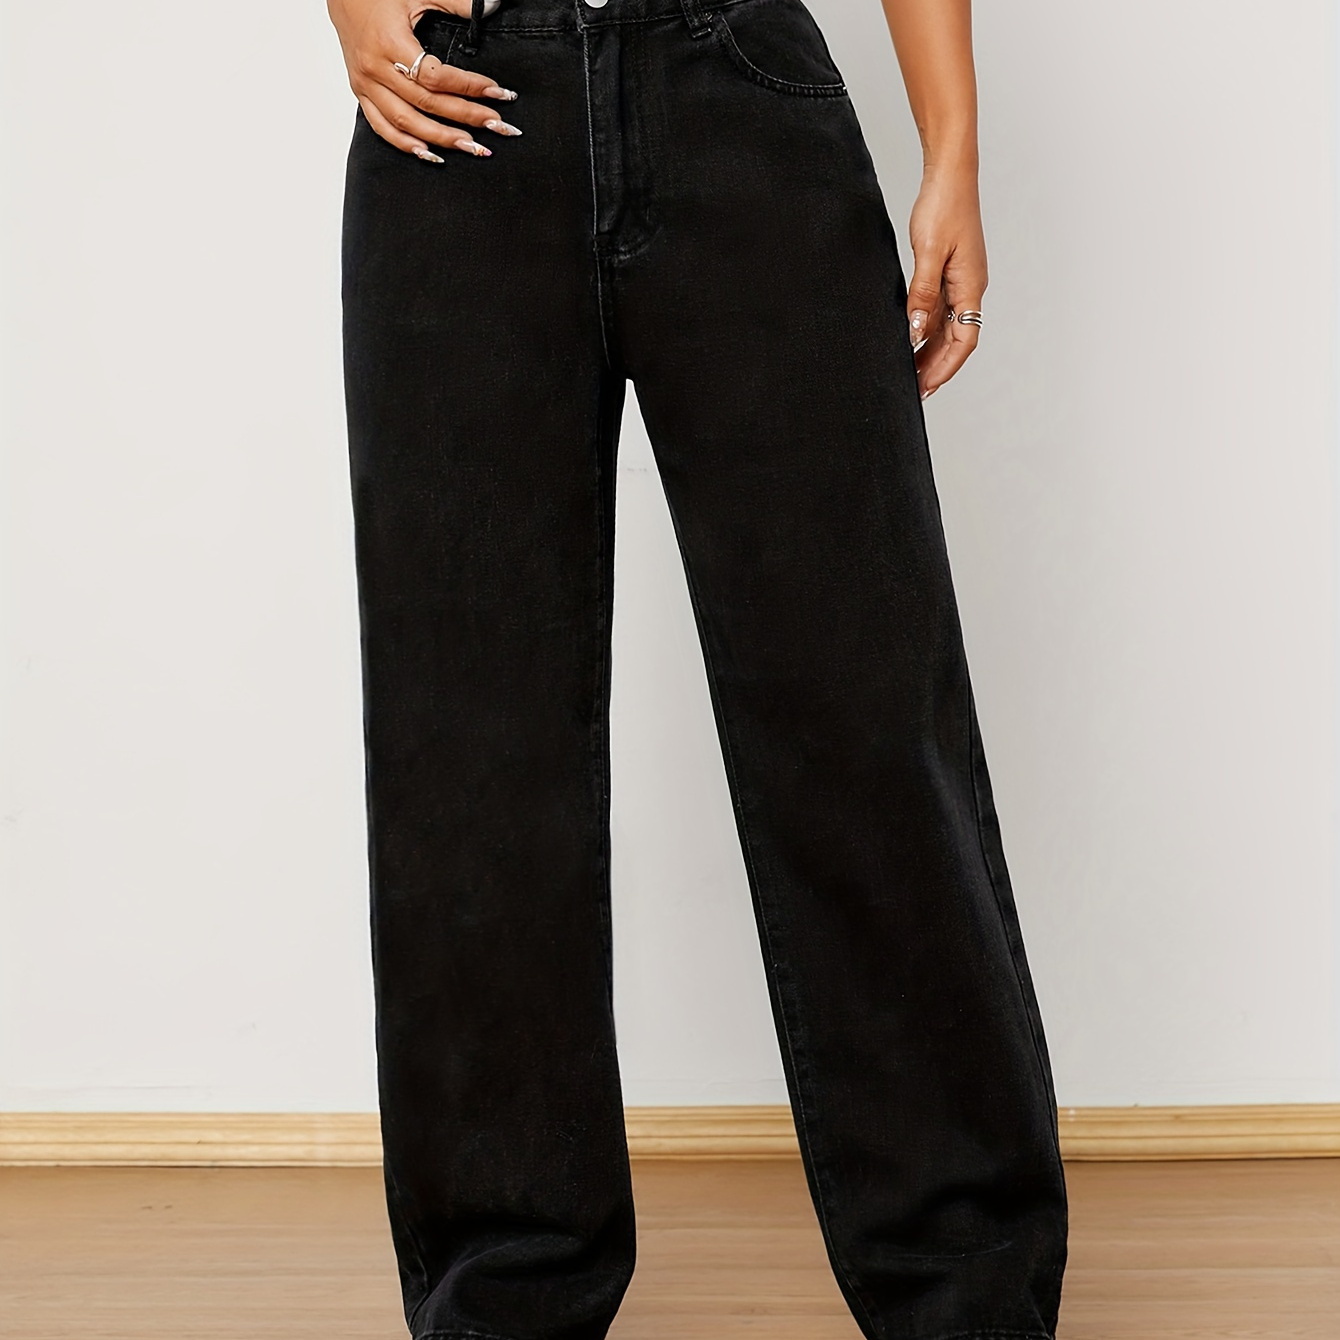 

Plain Black Color Loose Fit Straight Leg Casual Jeans, Denim Pants, Women's Denim Jeans & Clothing For Autumn